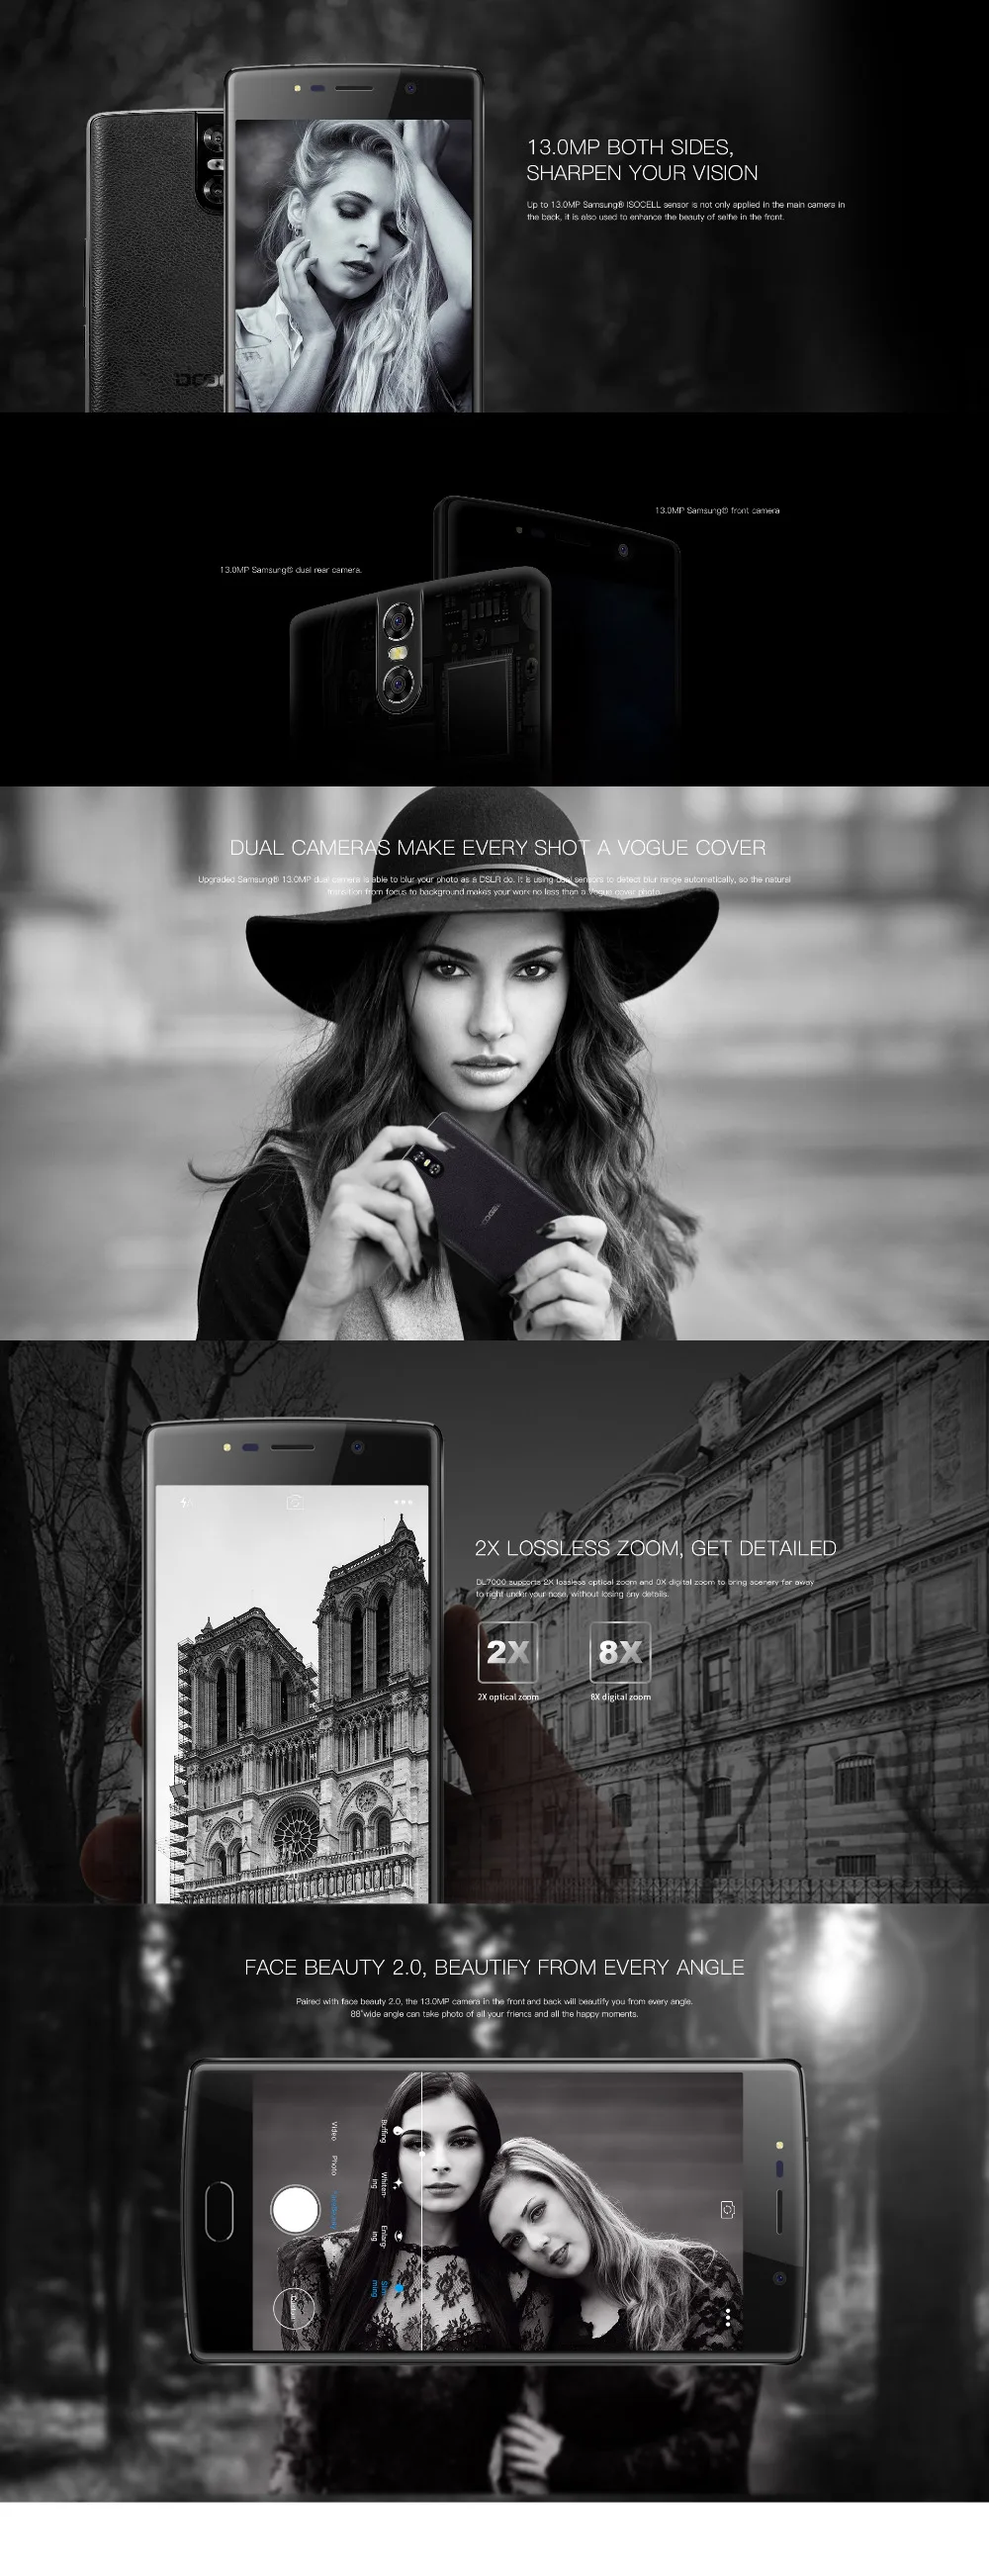 DOOGEE BL7000 5," смартфон с отпечатком пальца, Android 7,0, четыре ядра, 4 Гб+ 64 ГБ, двойная камера 13 МП, 7060 мА/ч, 12 В, 2 А, быстрая зарядка телефона